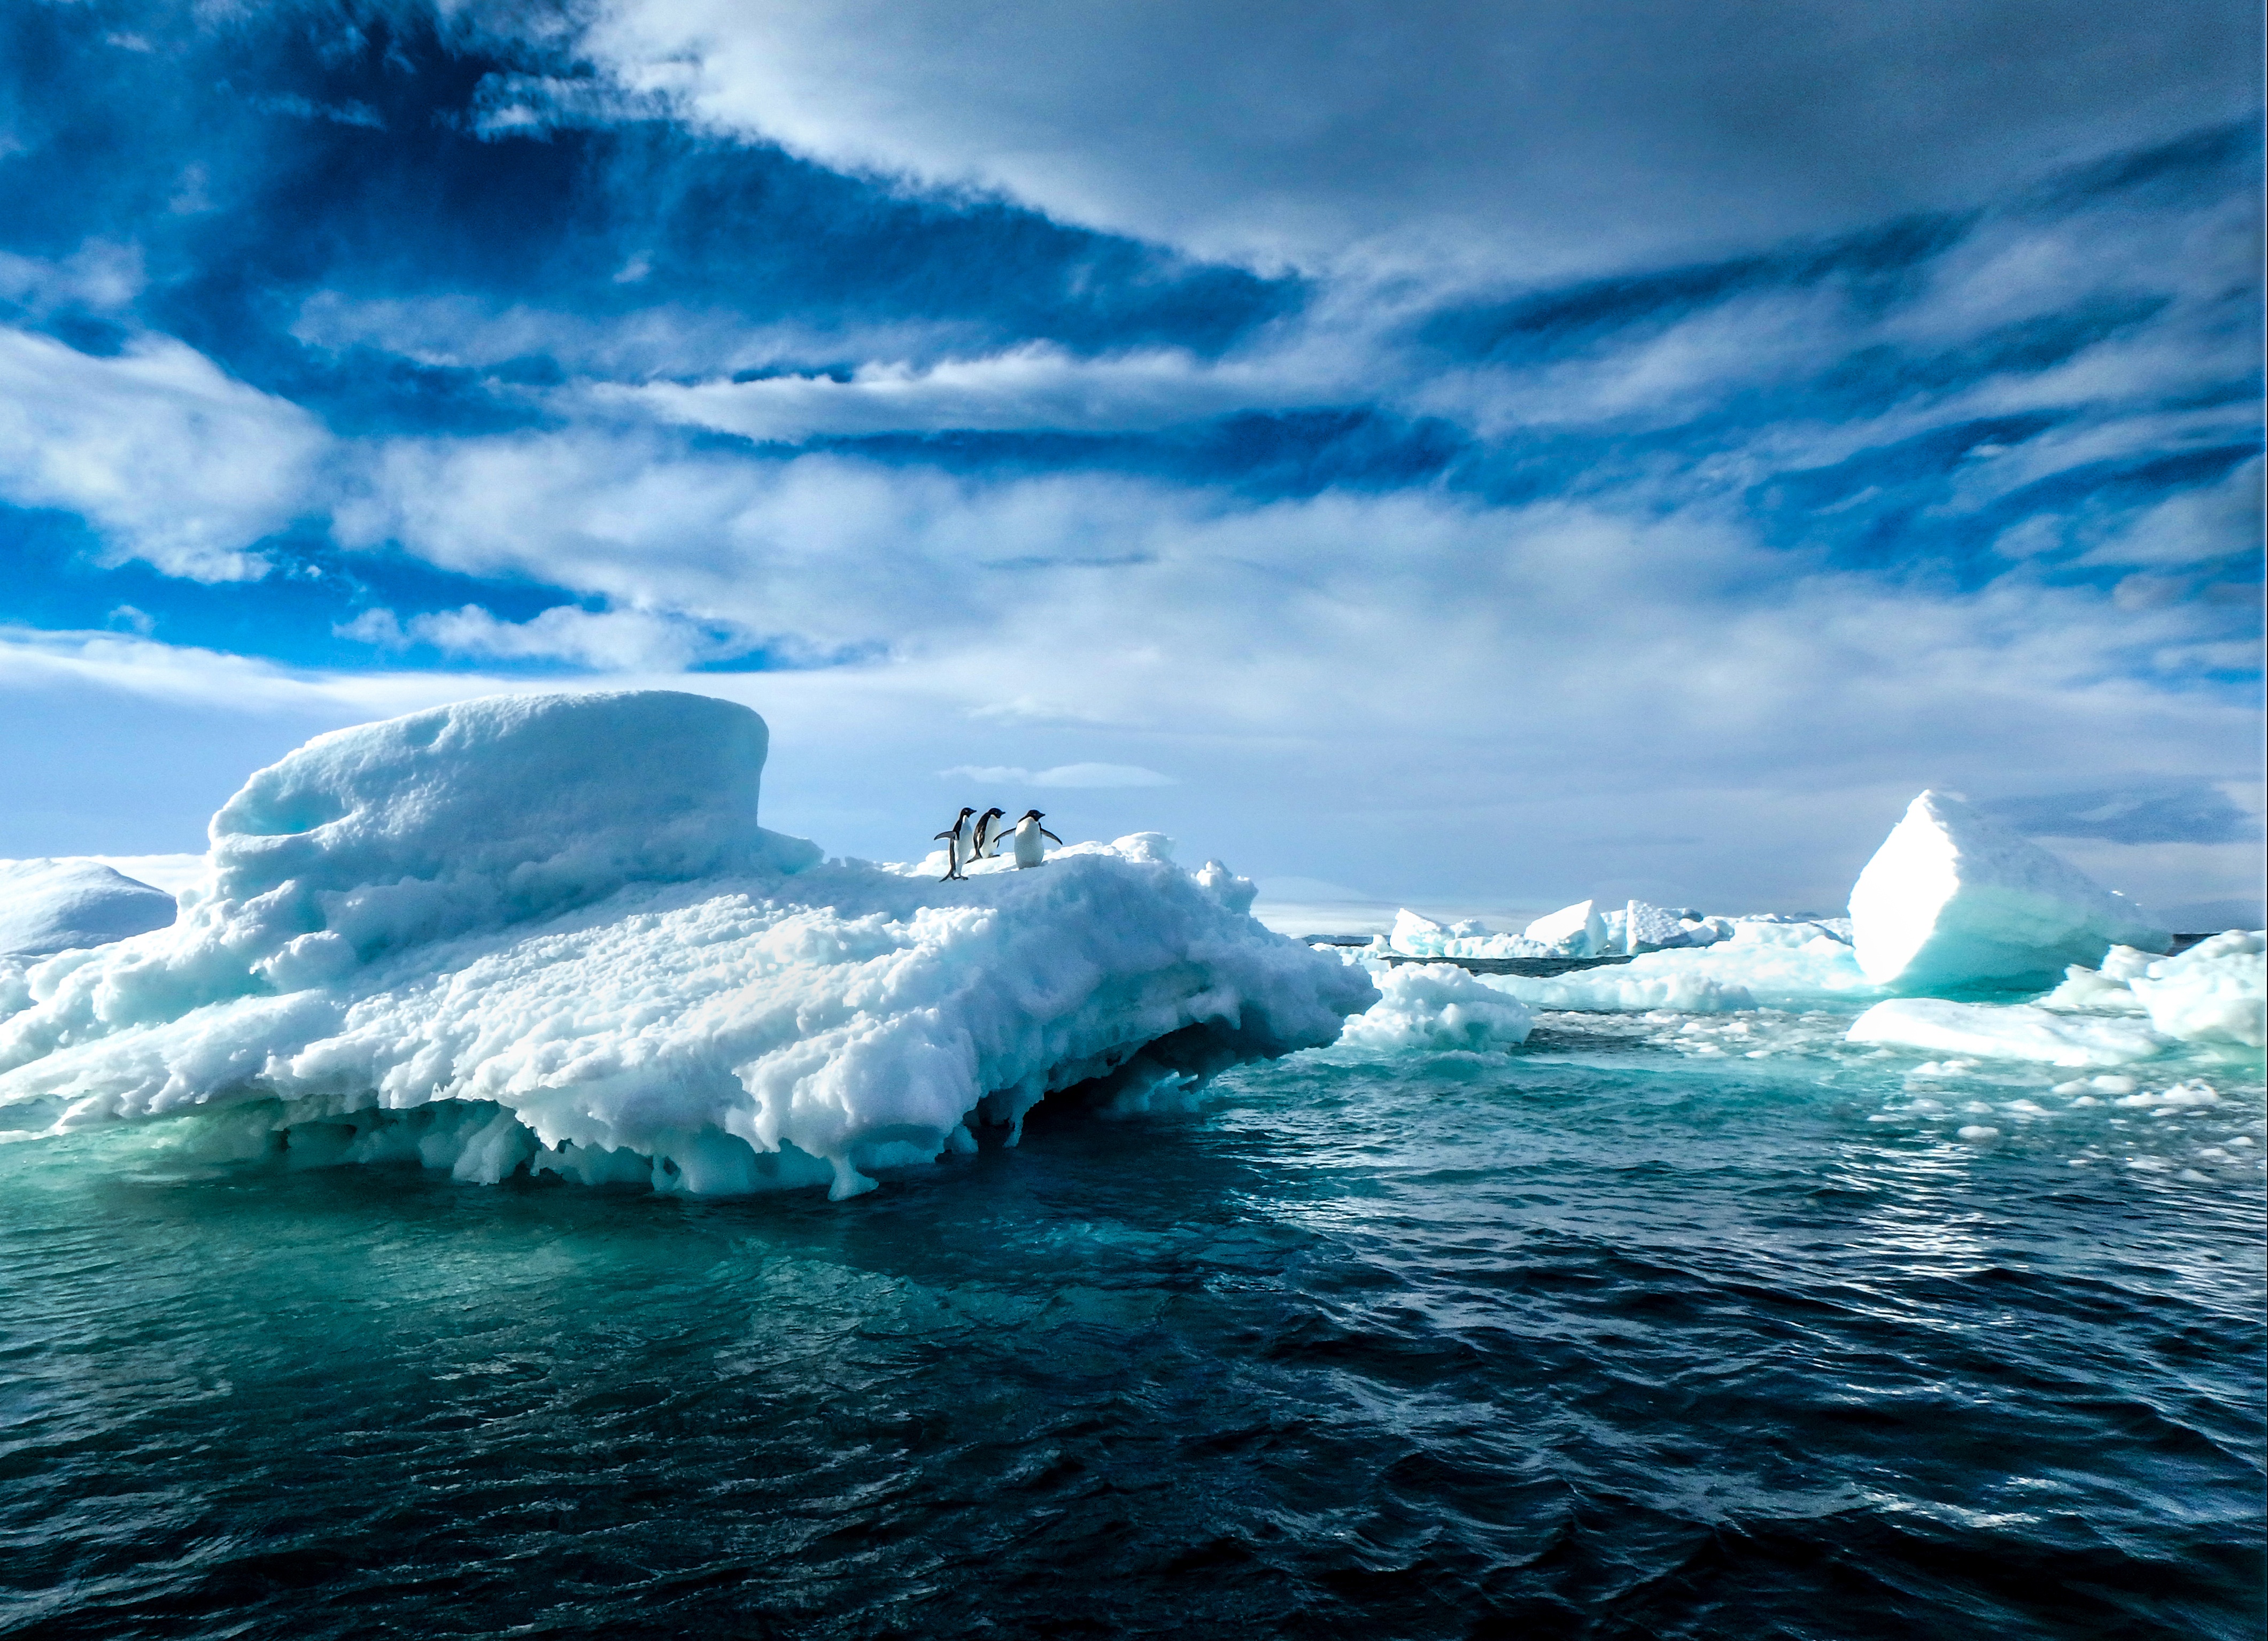 Katrina Zinger&apos;s award winning Penguins On Ice Antarctic photograph